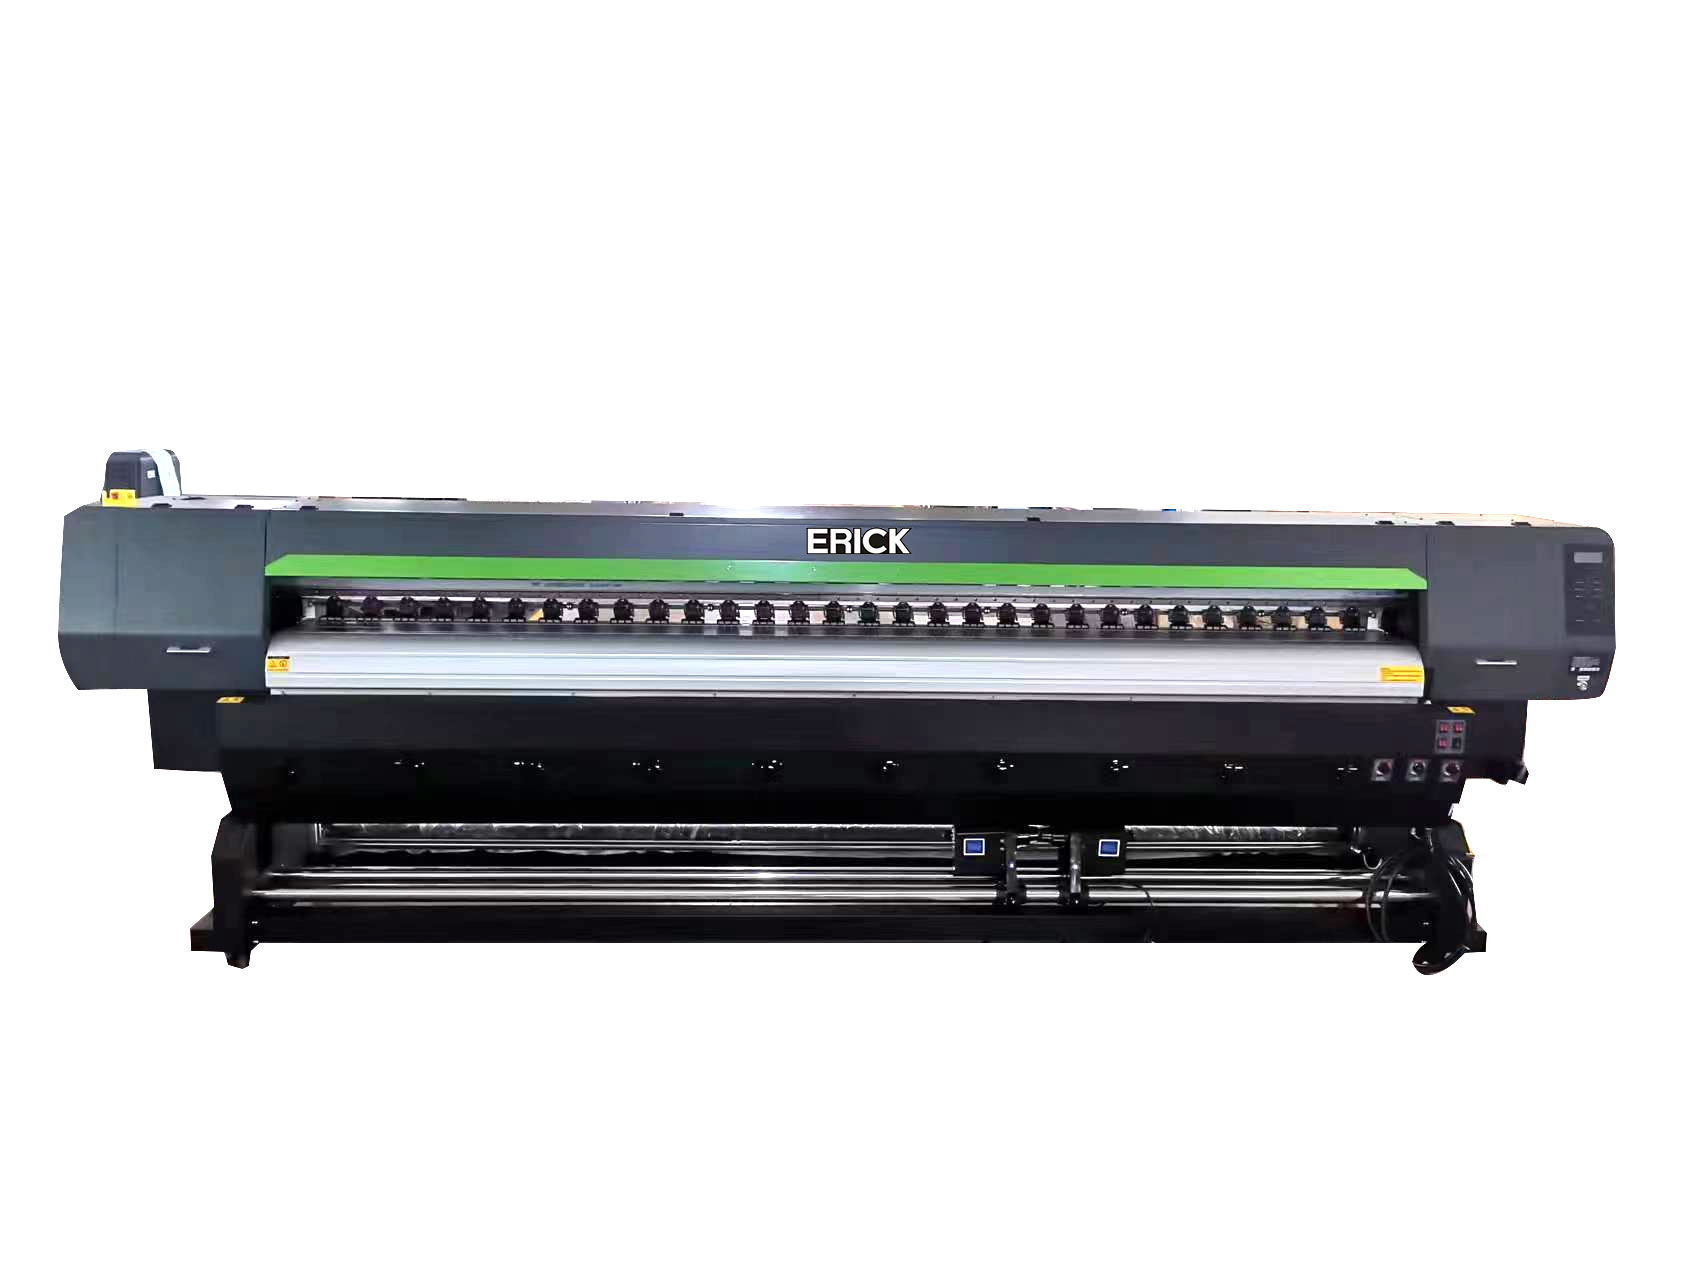 Tovarniški 3,2-metrski EP-I3200 E1*2pc velik format ekološki solventni risalnik tiskarski stroj digitalni tiskalnik